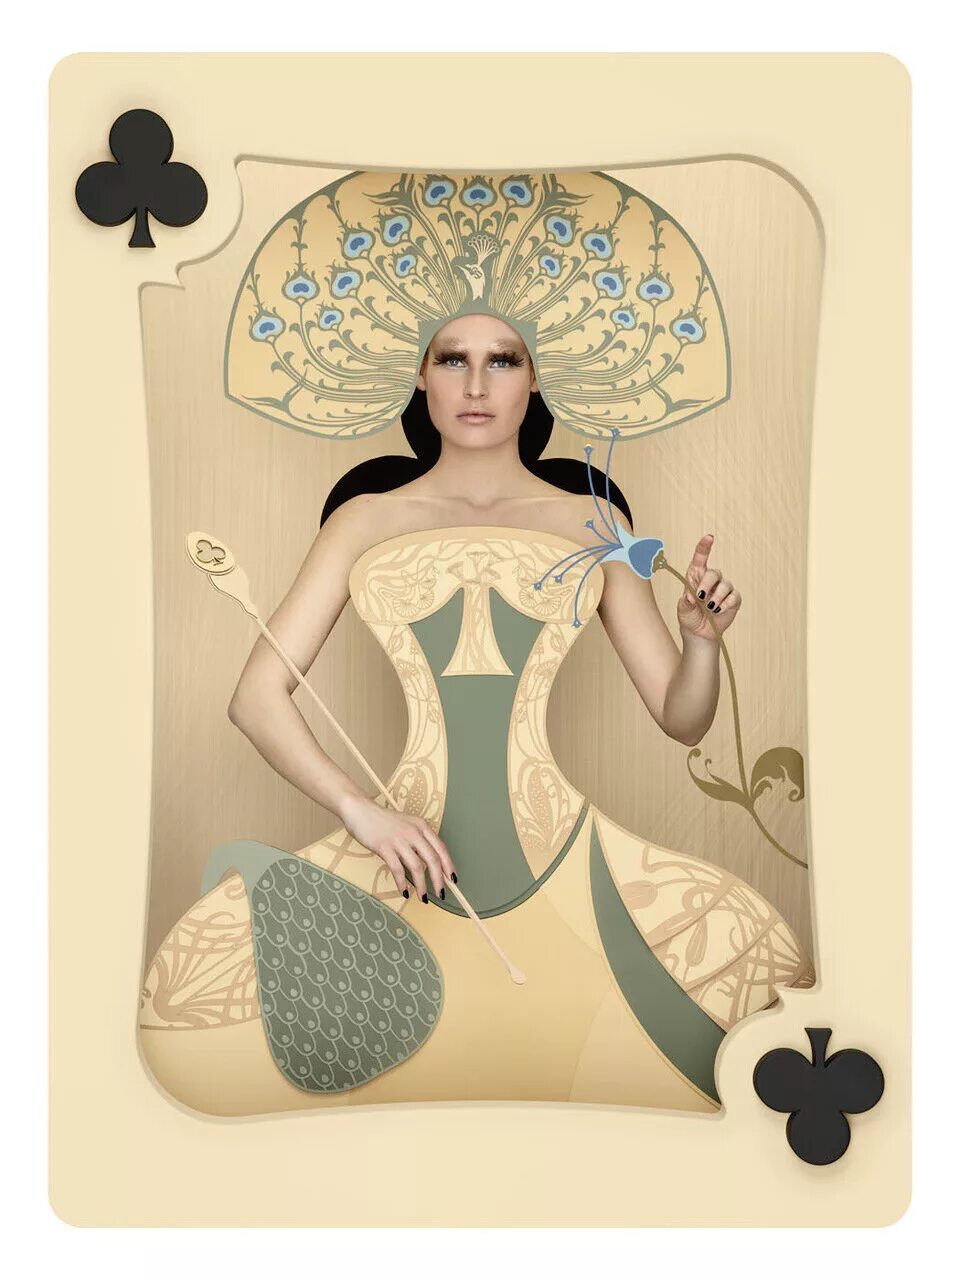 Дама ди. Christian Tagliavini. Картонная женщина. Женщина из картона. Картины сюрреализм карты игральные.